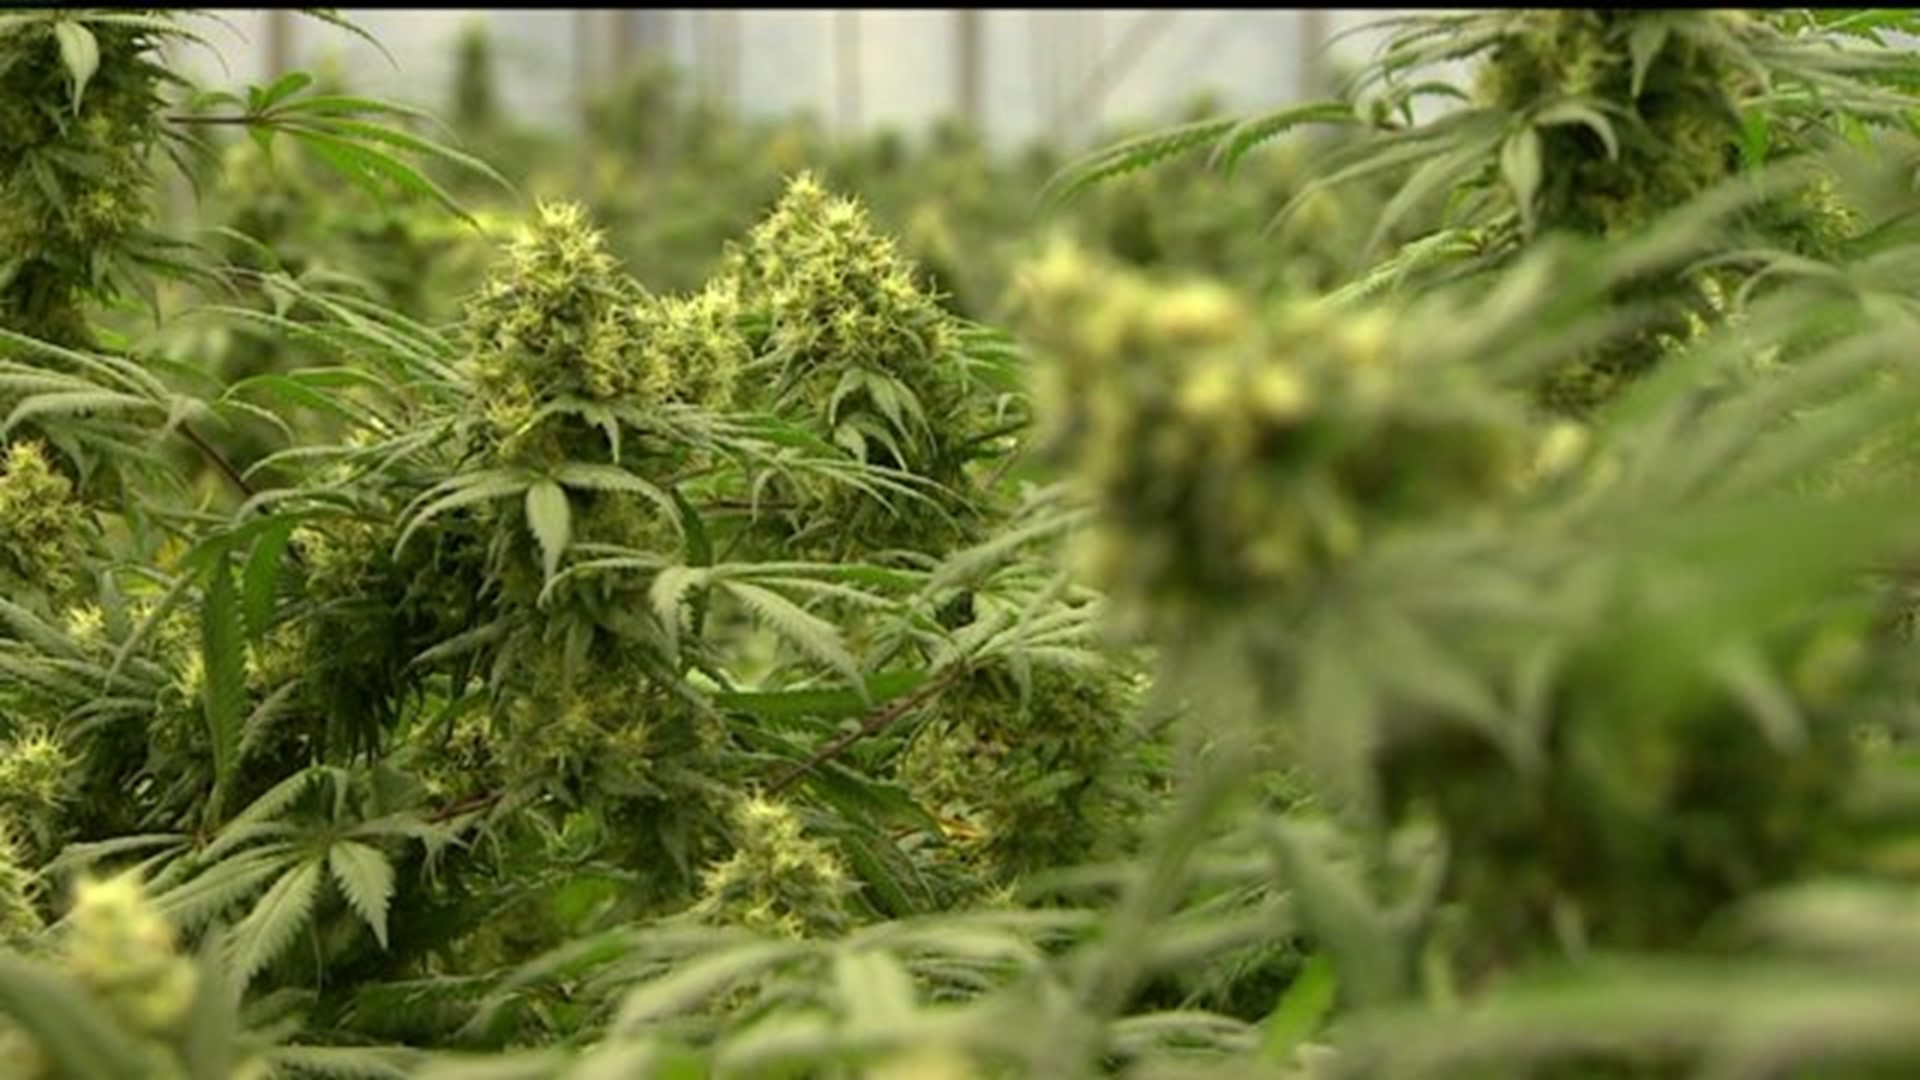 Pauley says medical marijuana dispensary delays not surprising